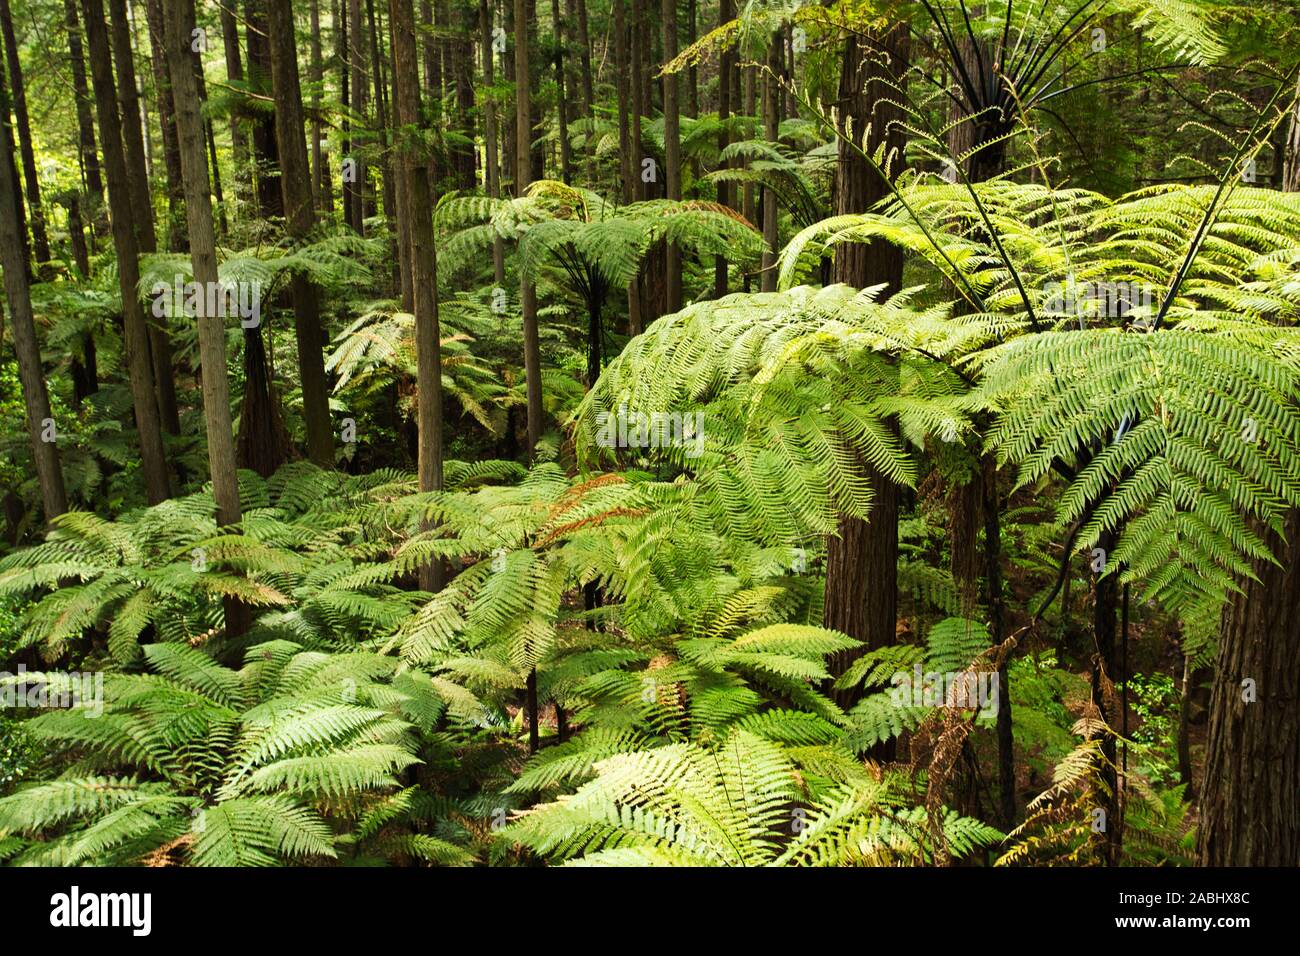 Forêt de fougères arborescentes et de séquoias géants dans la forêt de Whakarewarewa près de Rotorua, Nouvelle-Zélande Banque D'Images